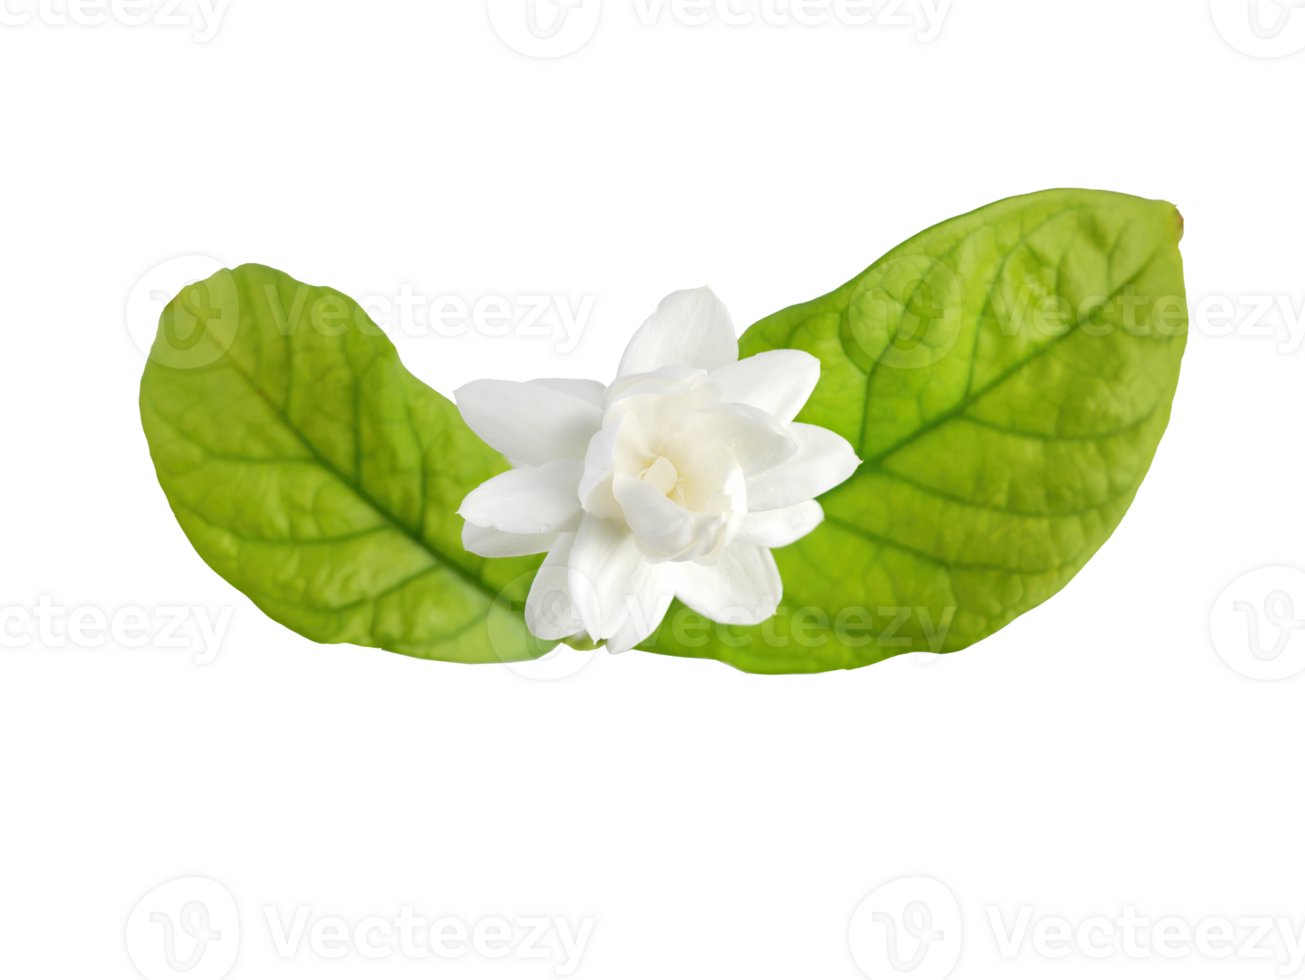 solteiro branco flor do grande duque do toscana, árabe branco jasmim, Jasminum sambac, aroma, flora, isolado, transparente fundo, Cortar fora png